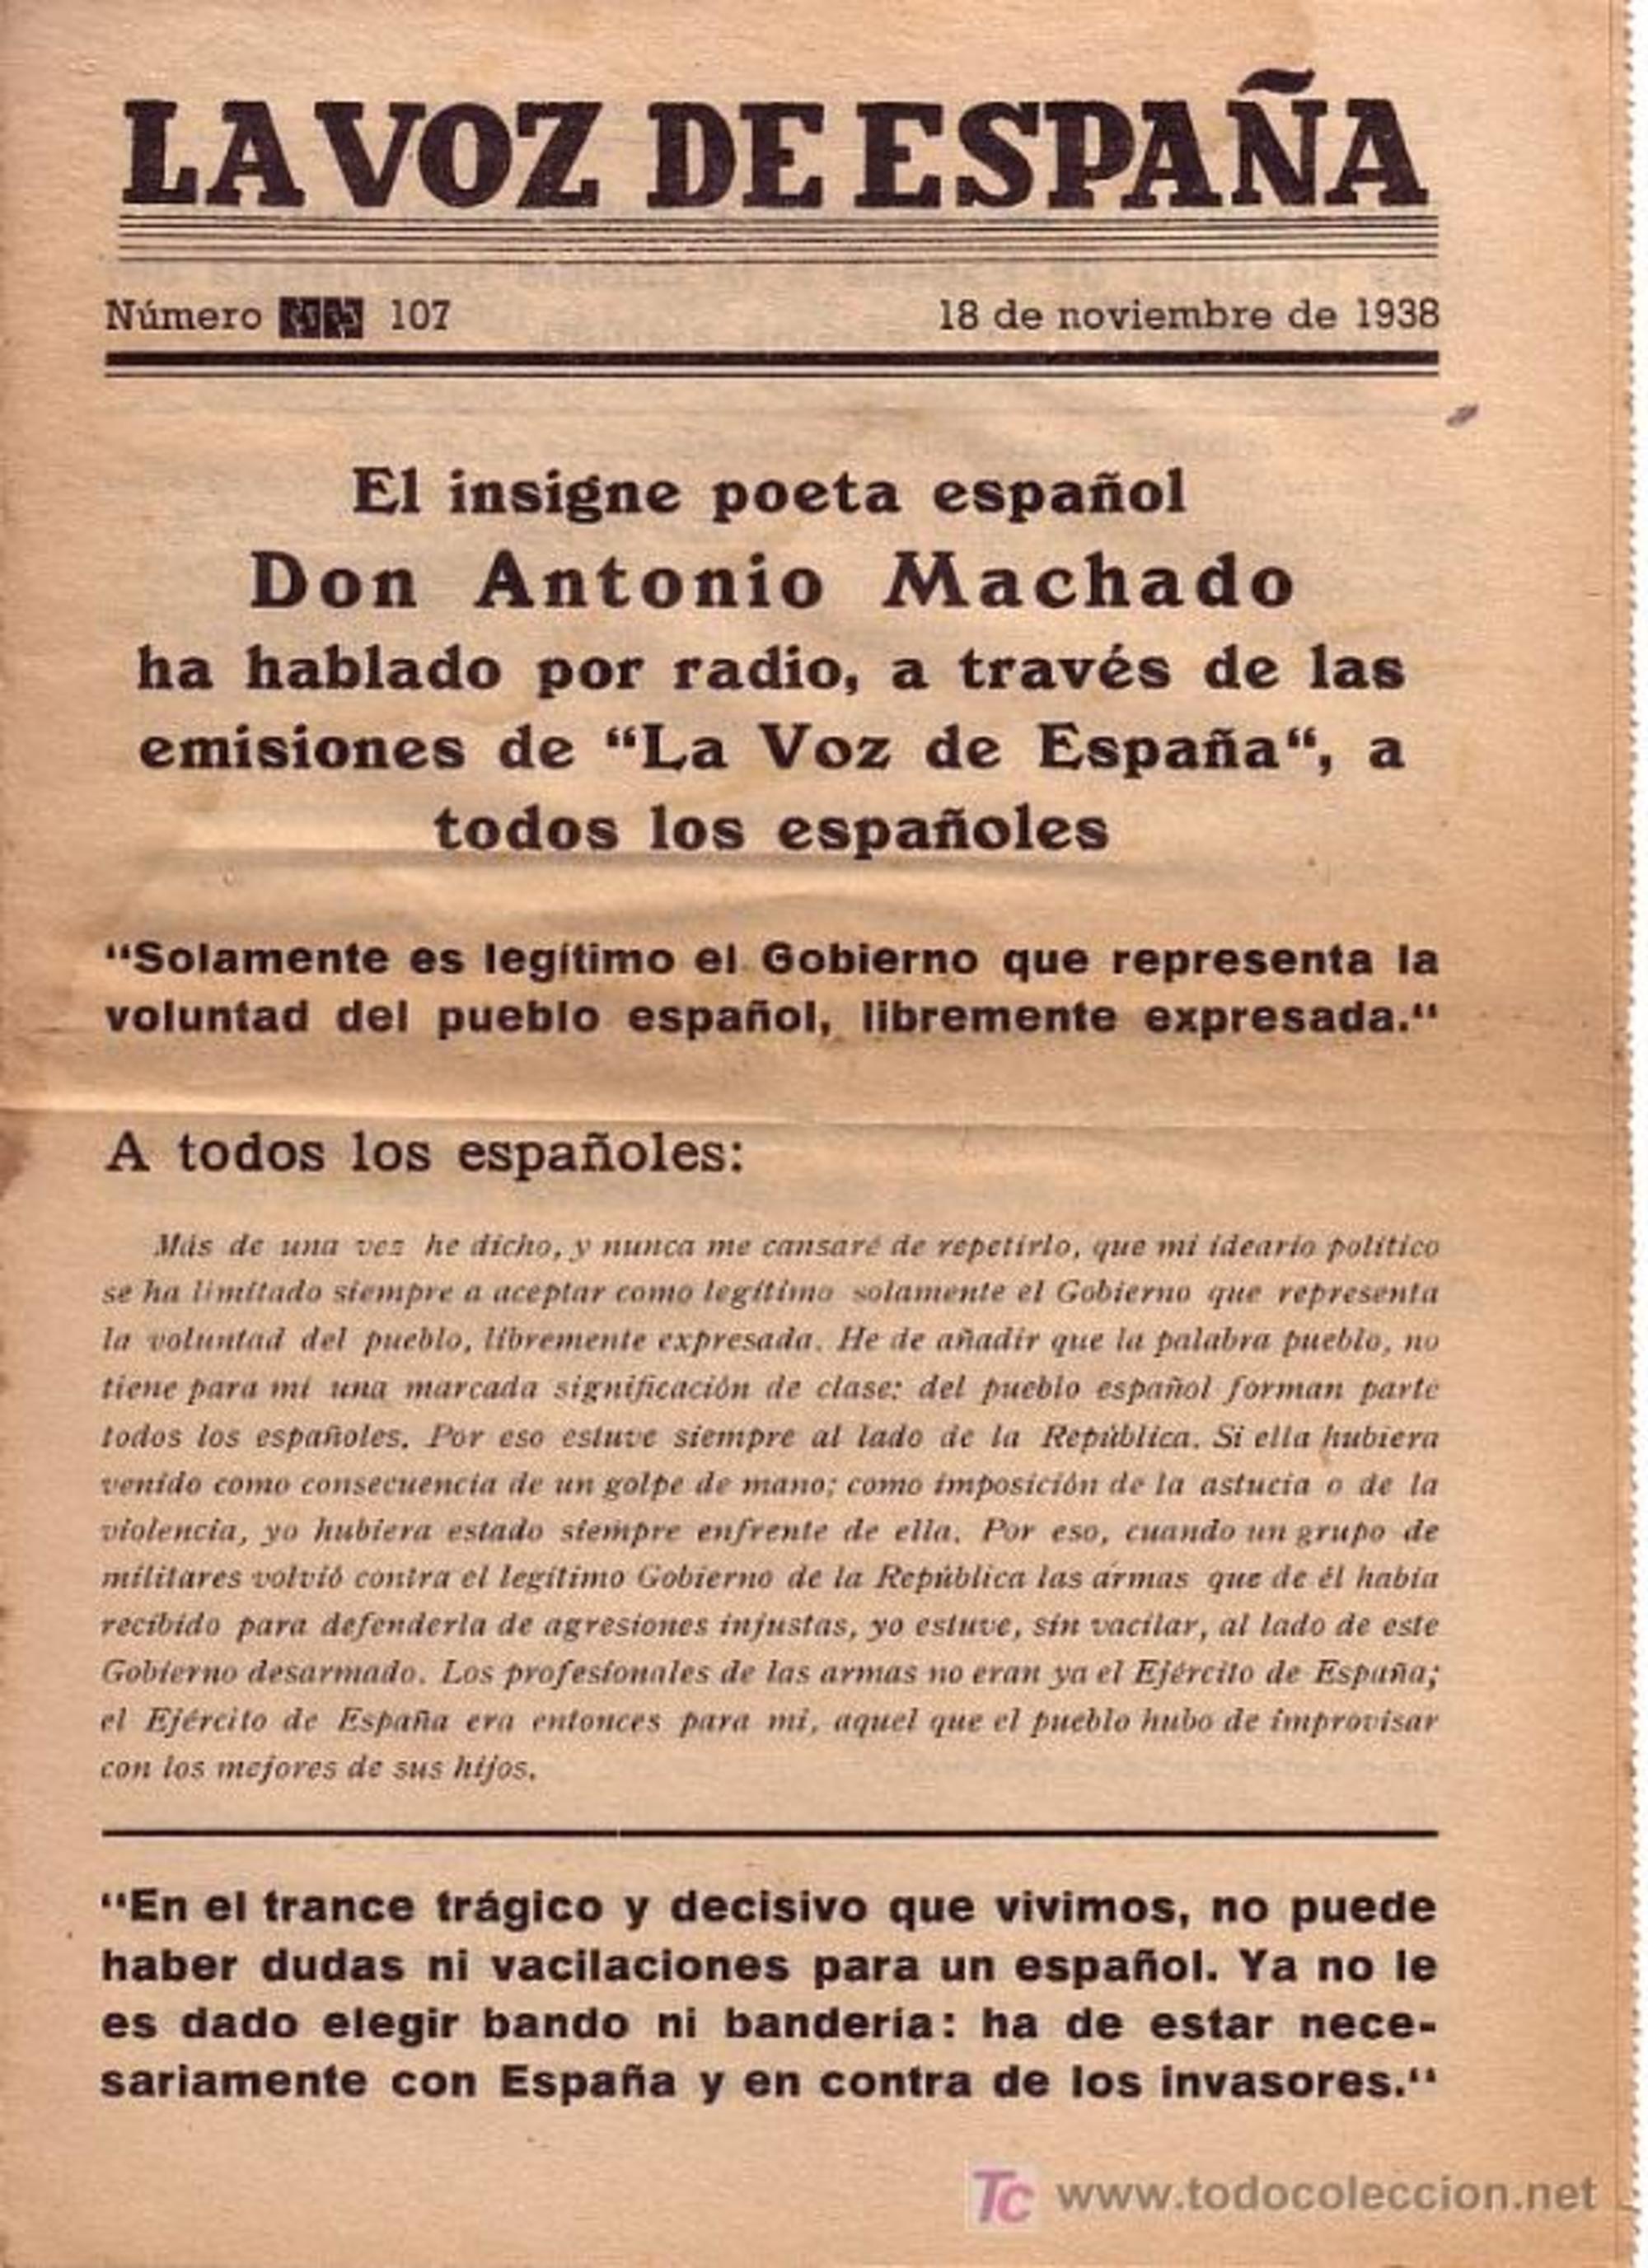 Resumen de la alocución de Machado en La voz de España